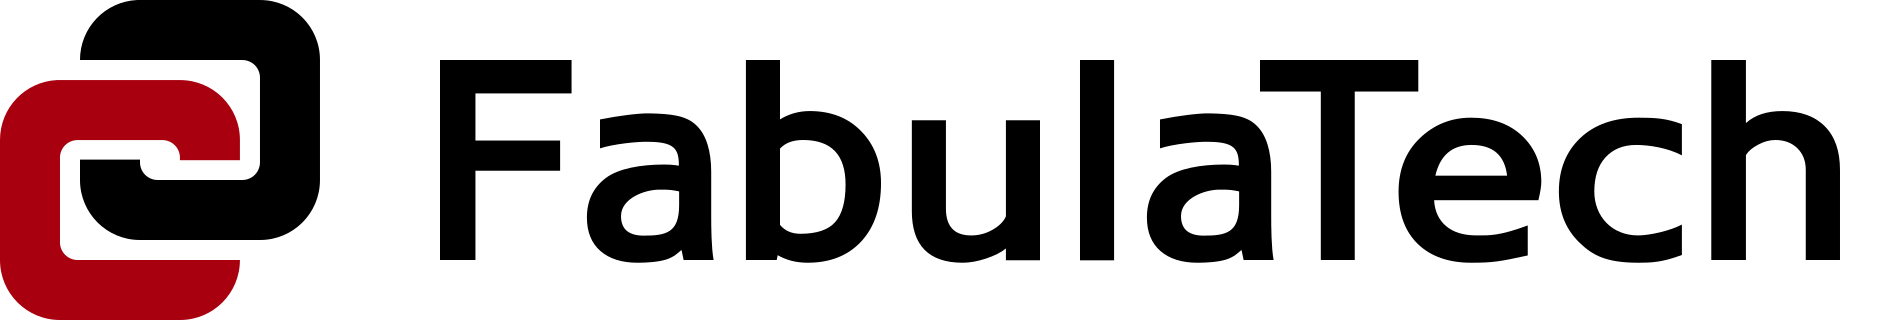 FabulaTech logo, printable (png 1900x320)